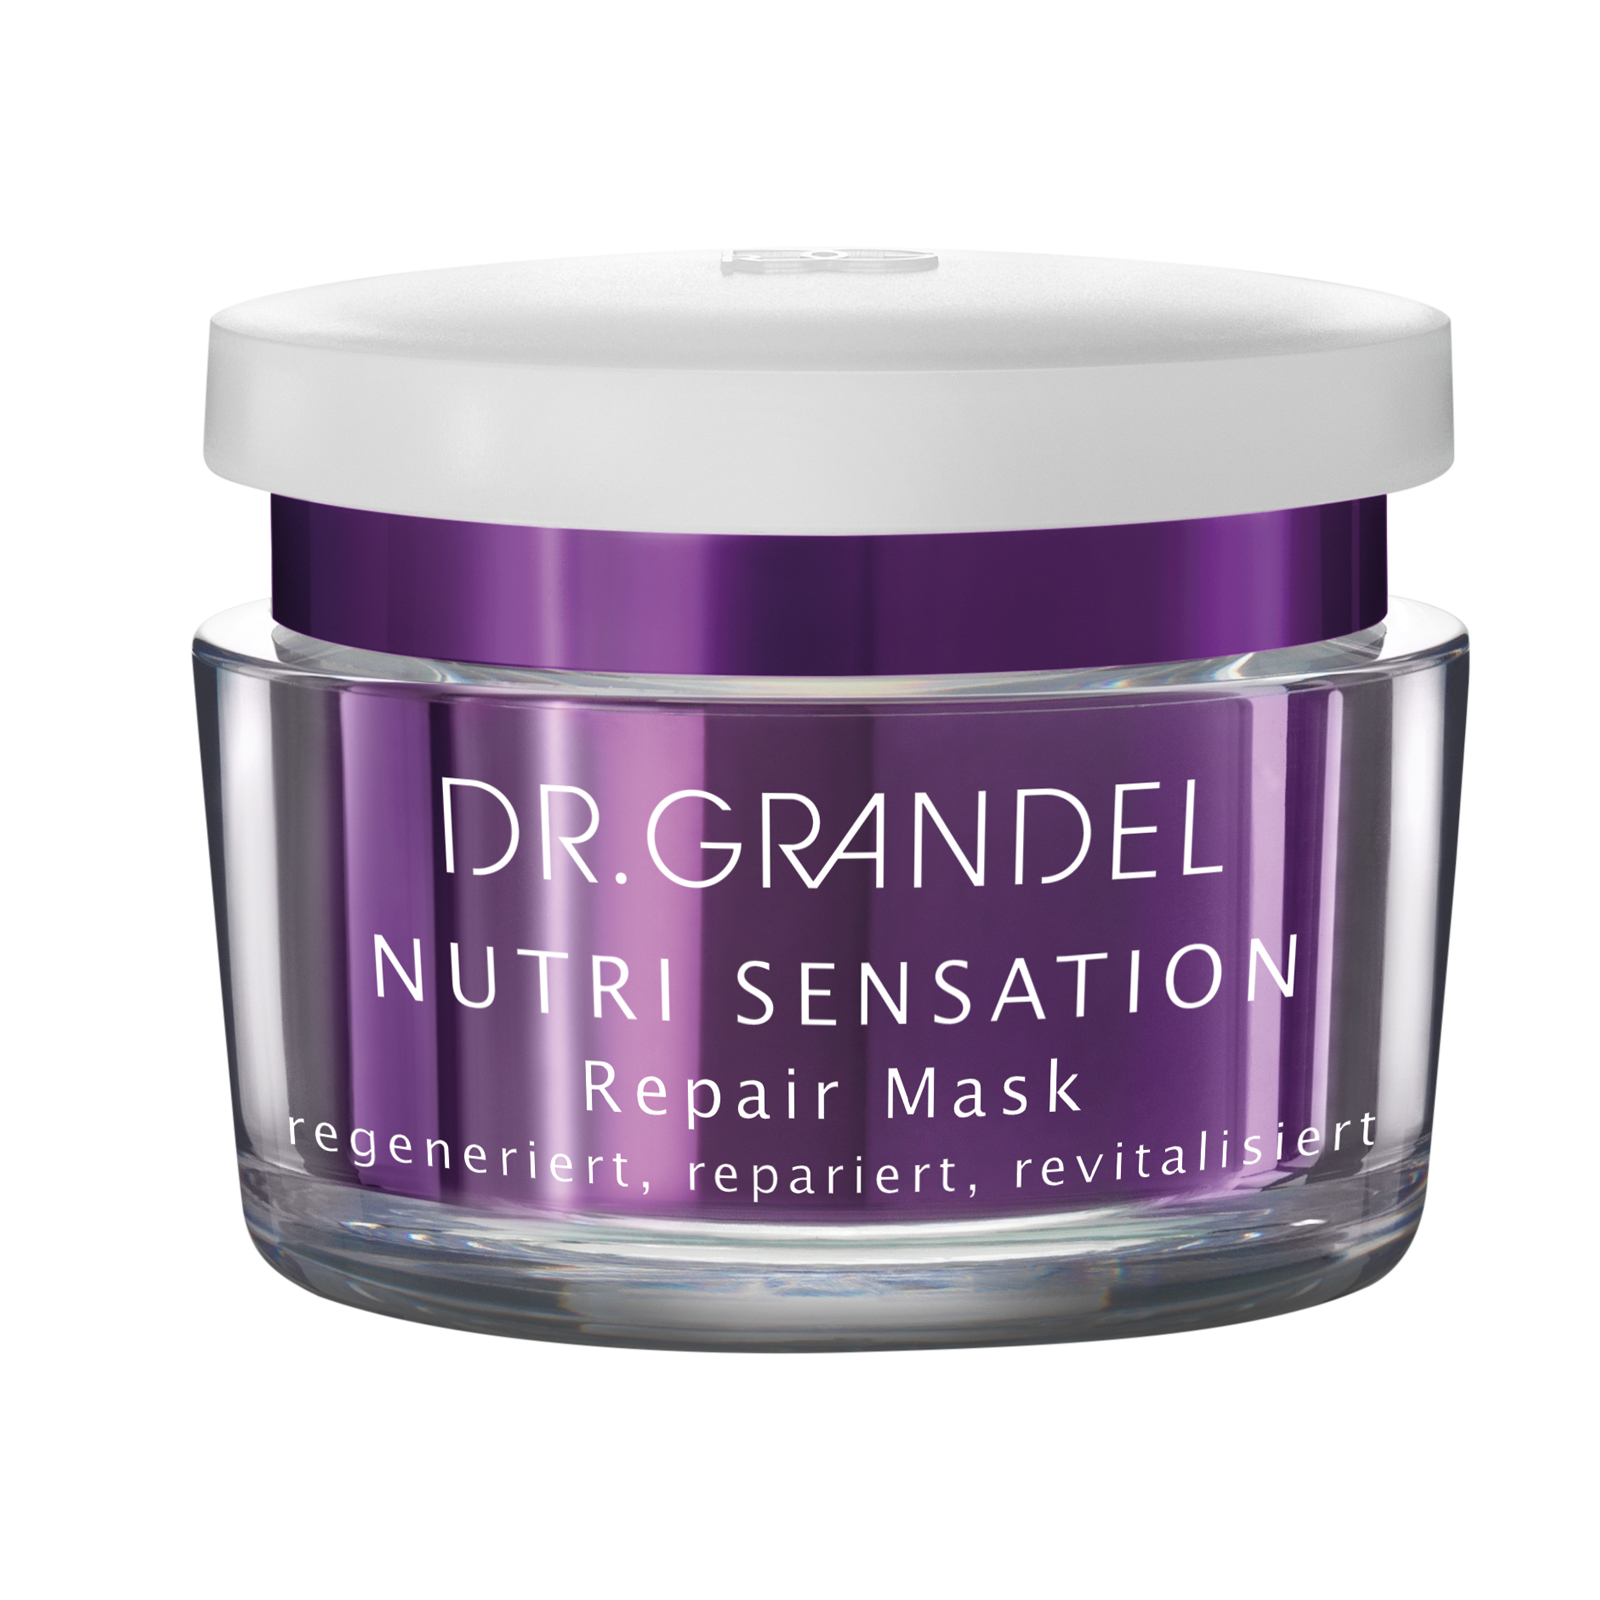 Dr. Grandel NUTRI SENSATION Repair Mask 50 ml